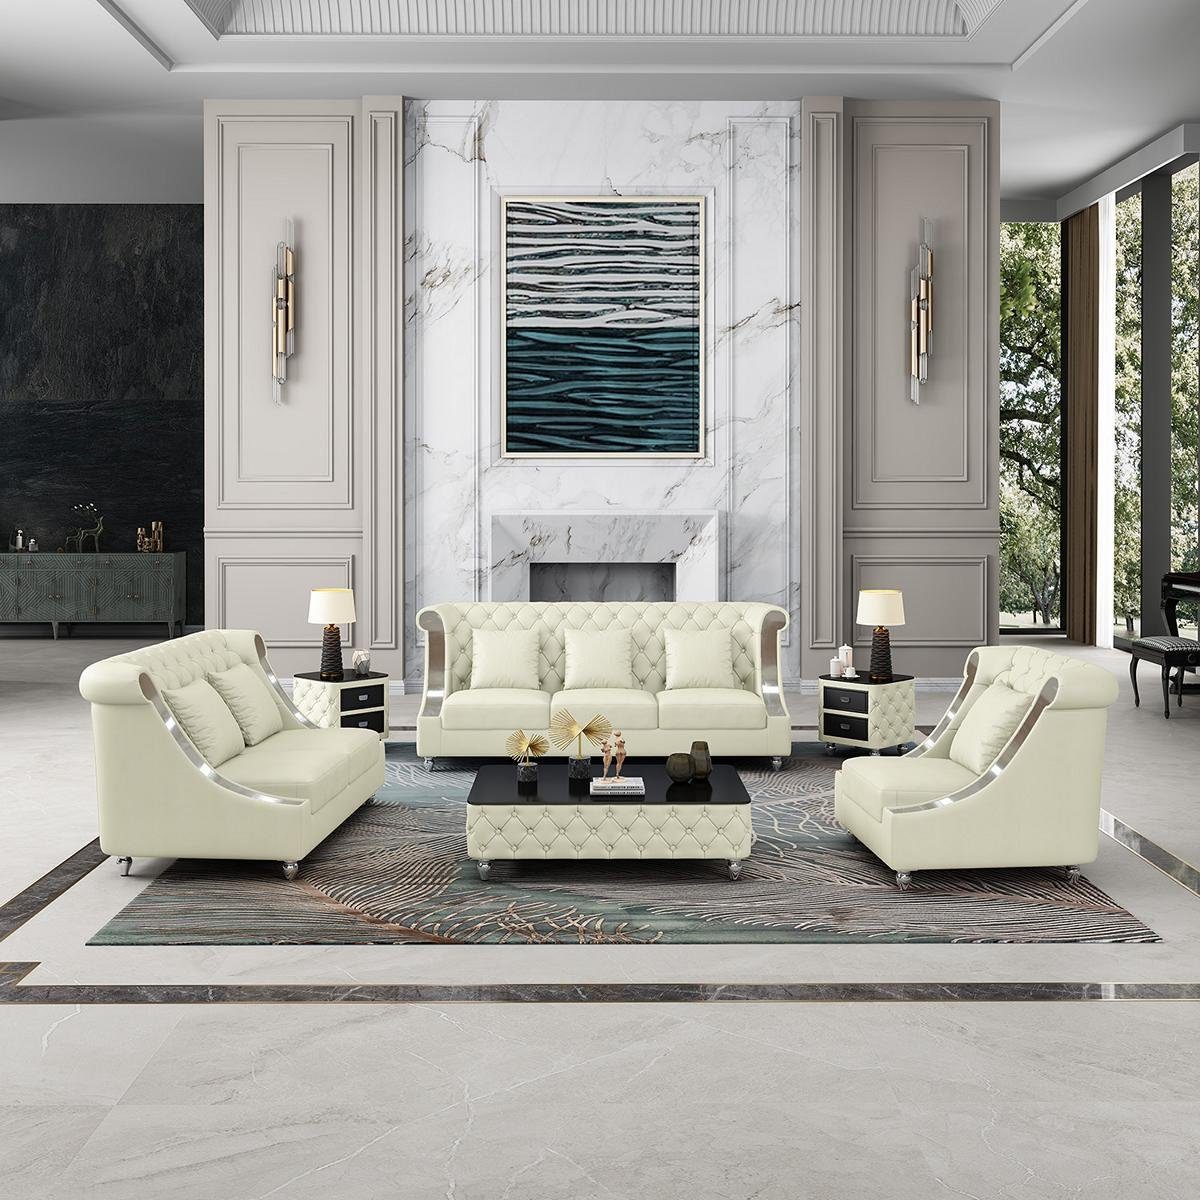 JVmoebel Wohnzimmer-Set, Ledersofa Couch Wohnlandschaft Garnitur Design Modern 3 1 Sitzer Weiß